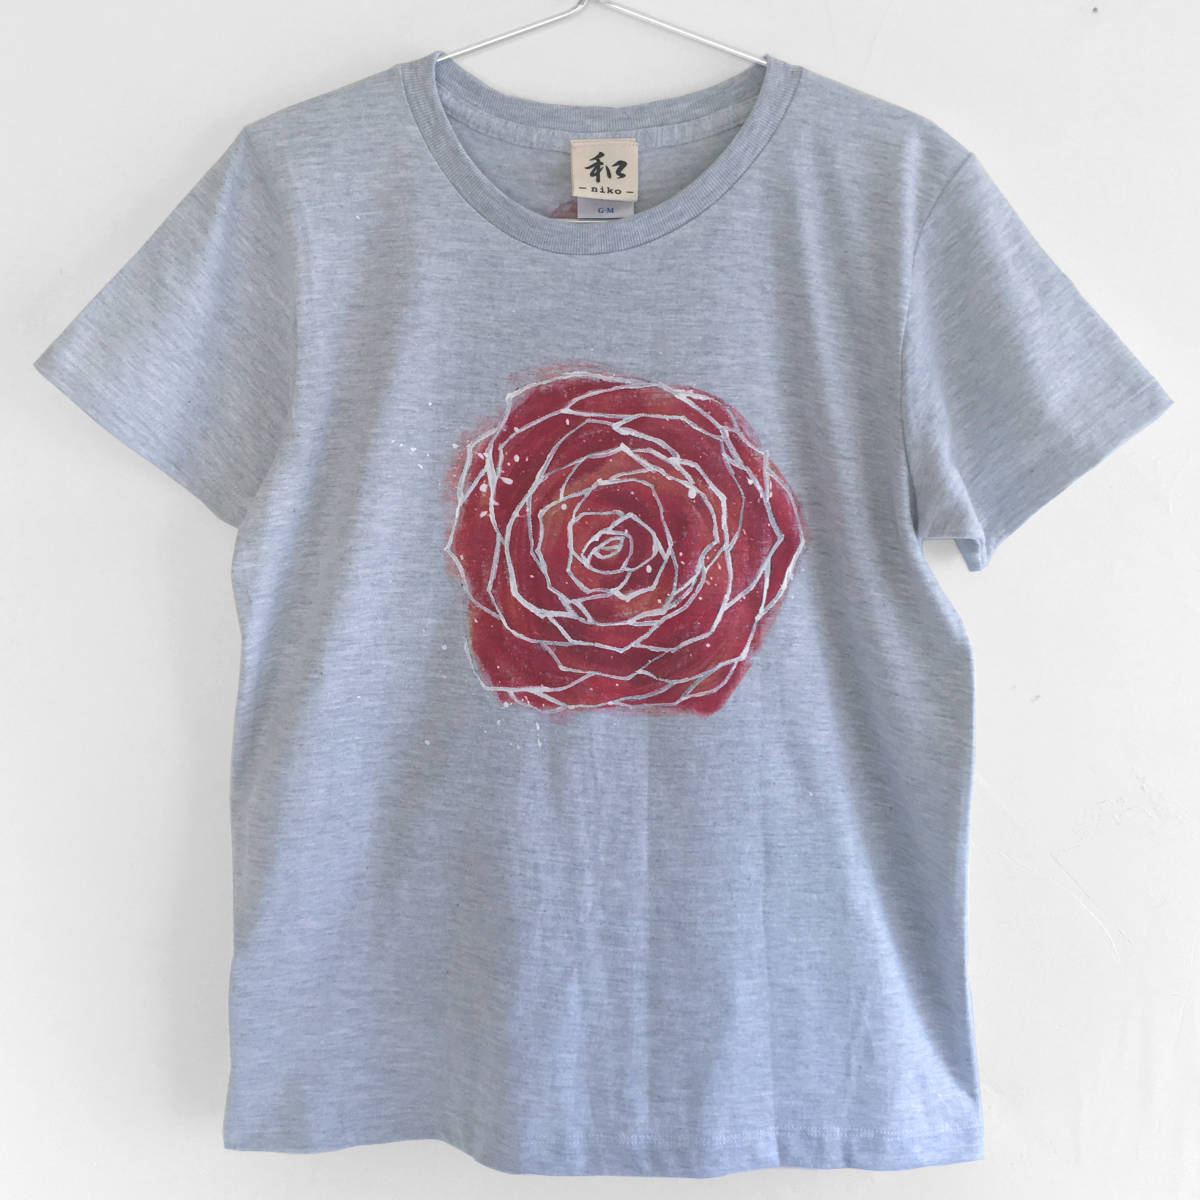 महिलाओं की टी-शर्ट एम आकार गुलाब के फूल पैटर्न हाथ से पेंट की गई टी-शर्ट कैजुअल गुलाब जल रंग क्रिसमस, एम आकार, गोलाकार गर्दन, नमूनों